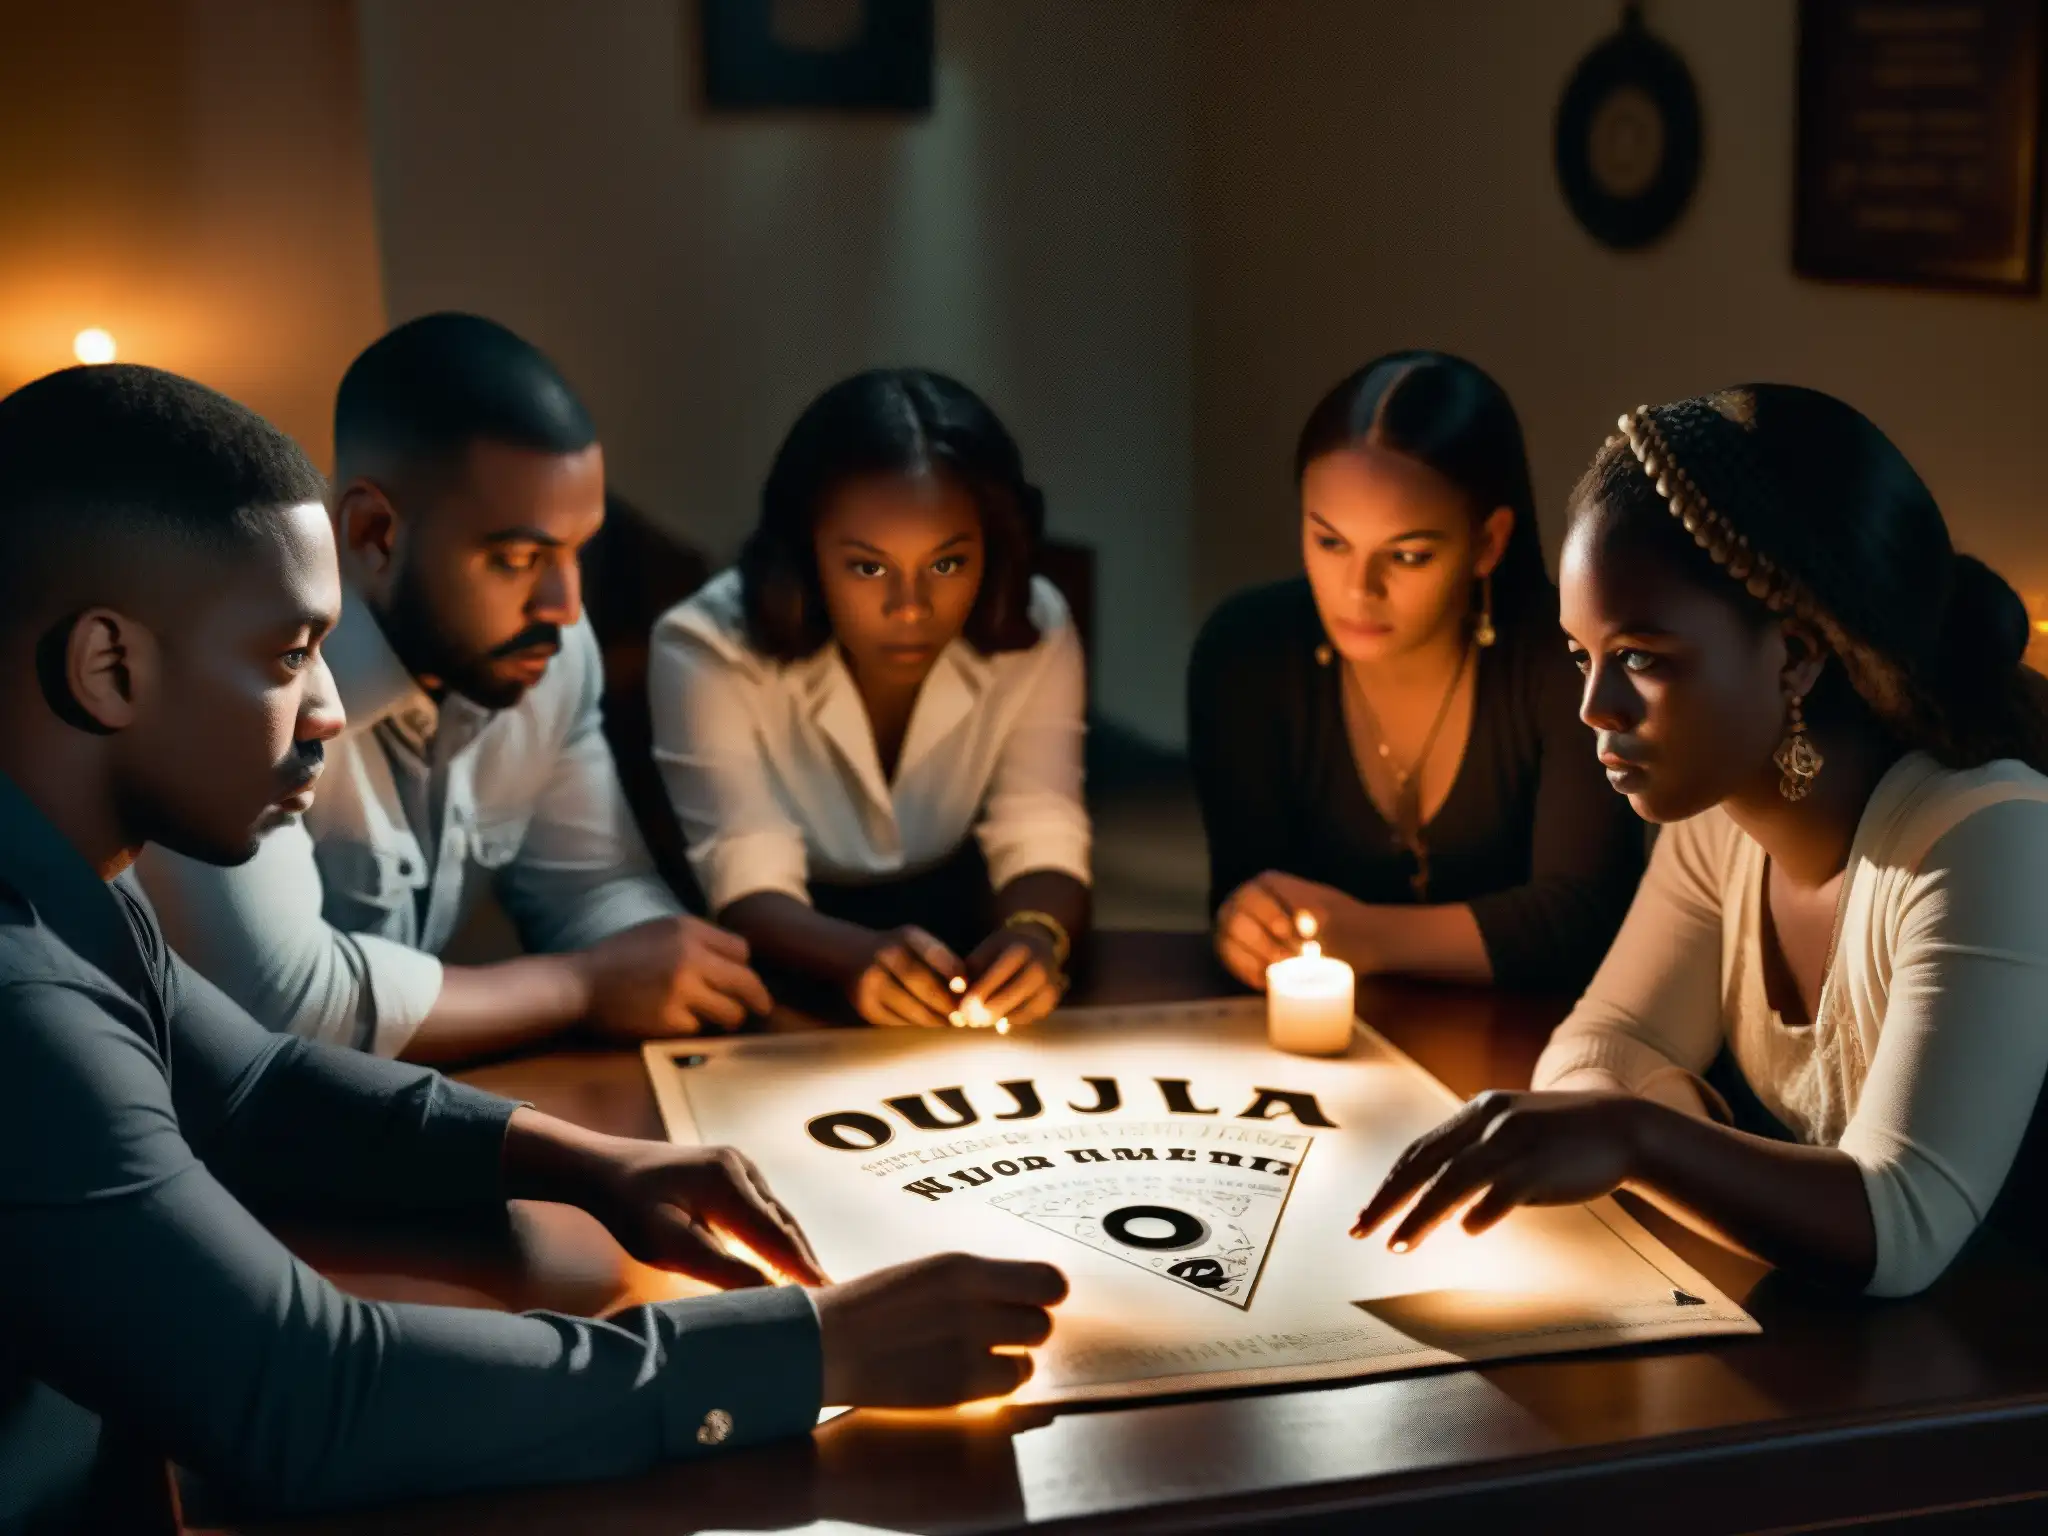 Un grupo tenso de personas rodea una Ouija en una habitación a oscuras, iluminada por velas, evocando el análisis psicológico de la cultura popular